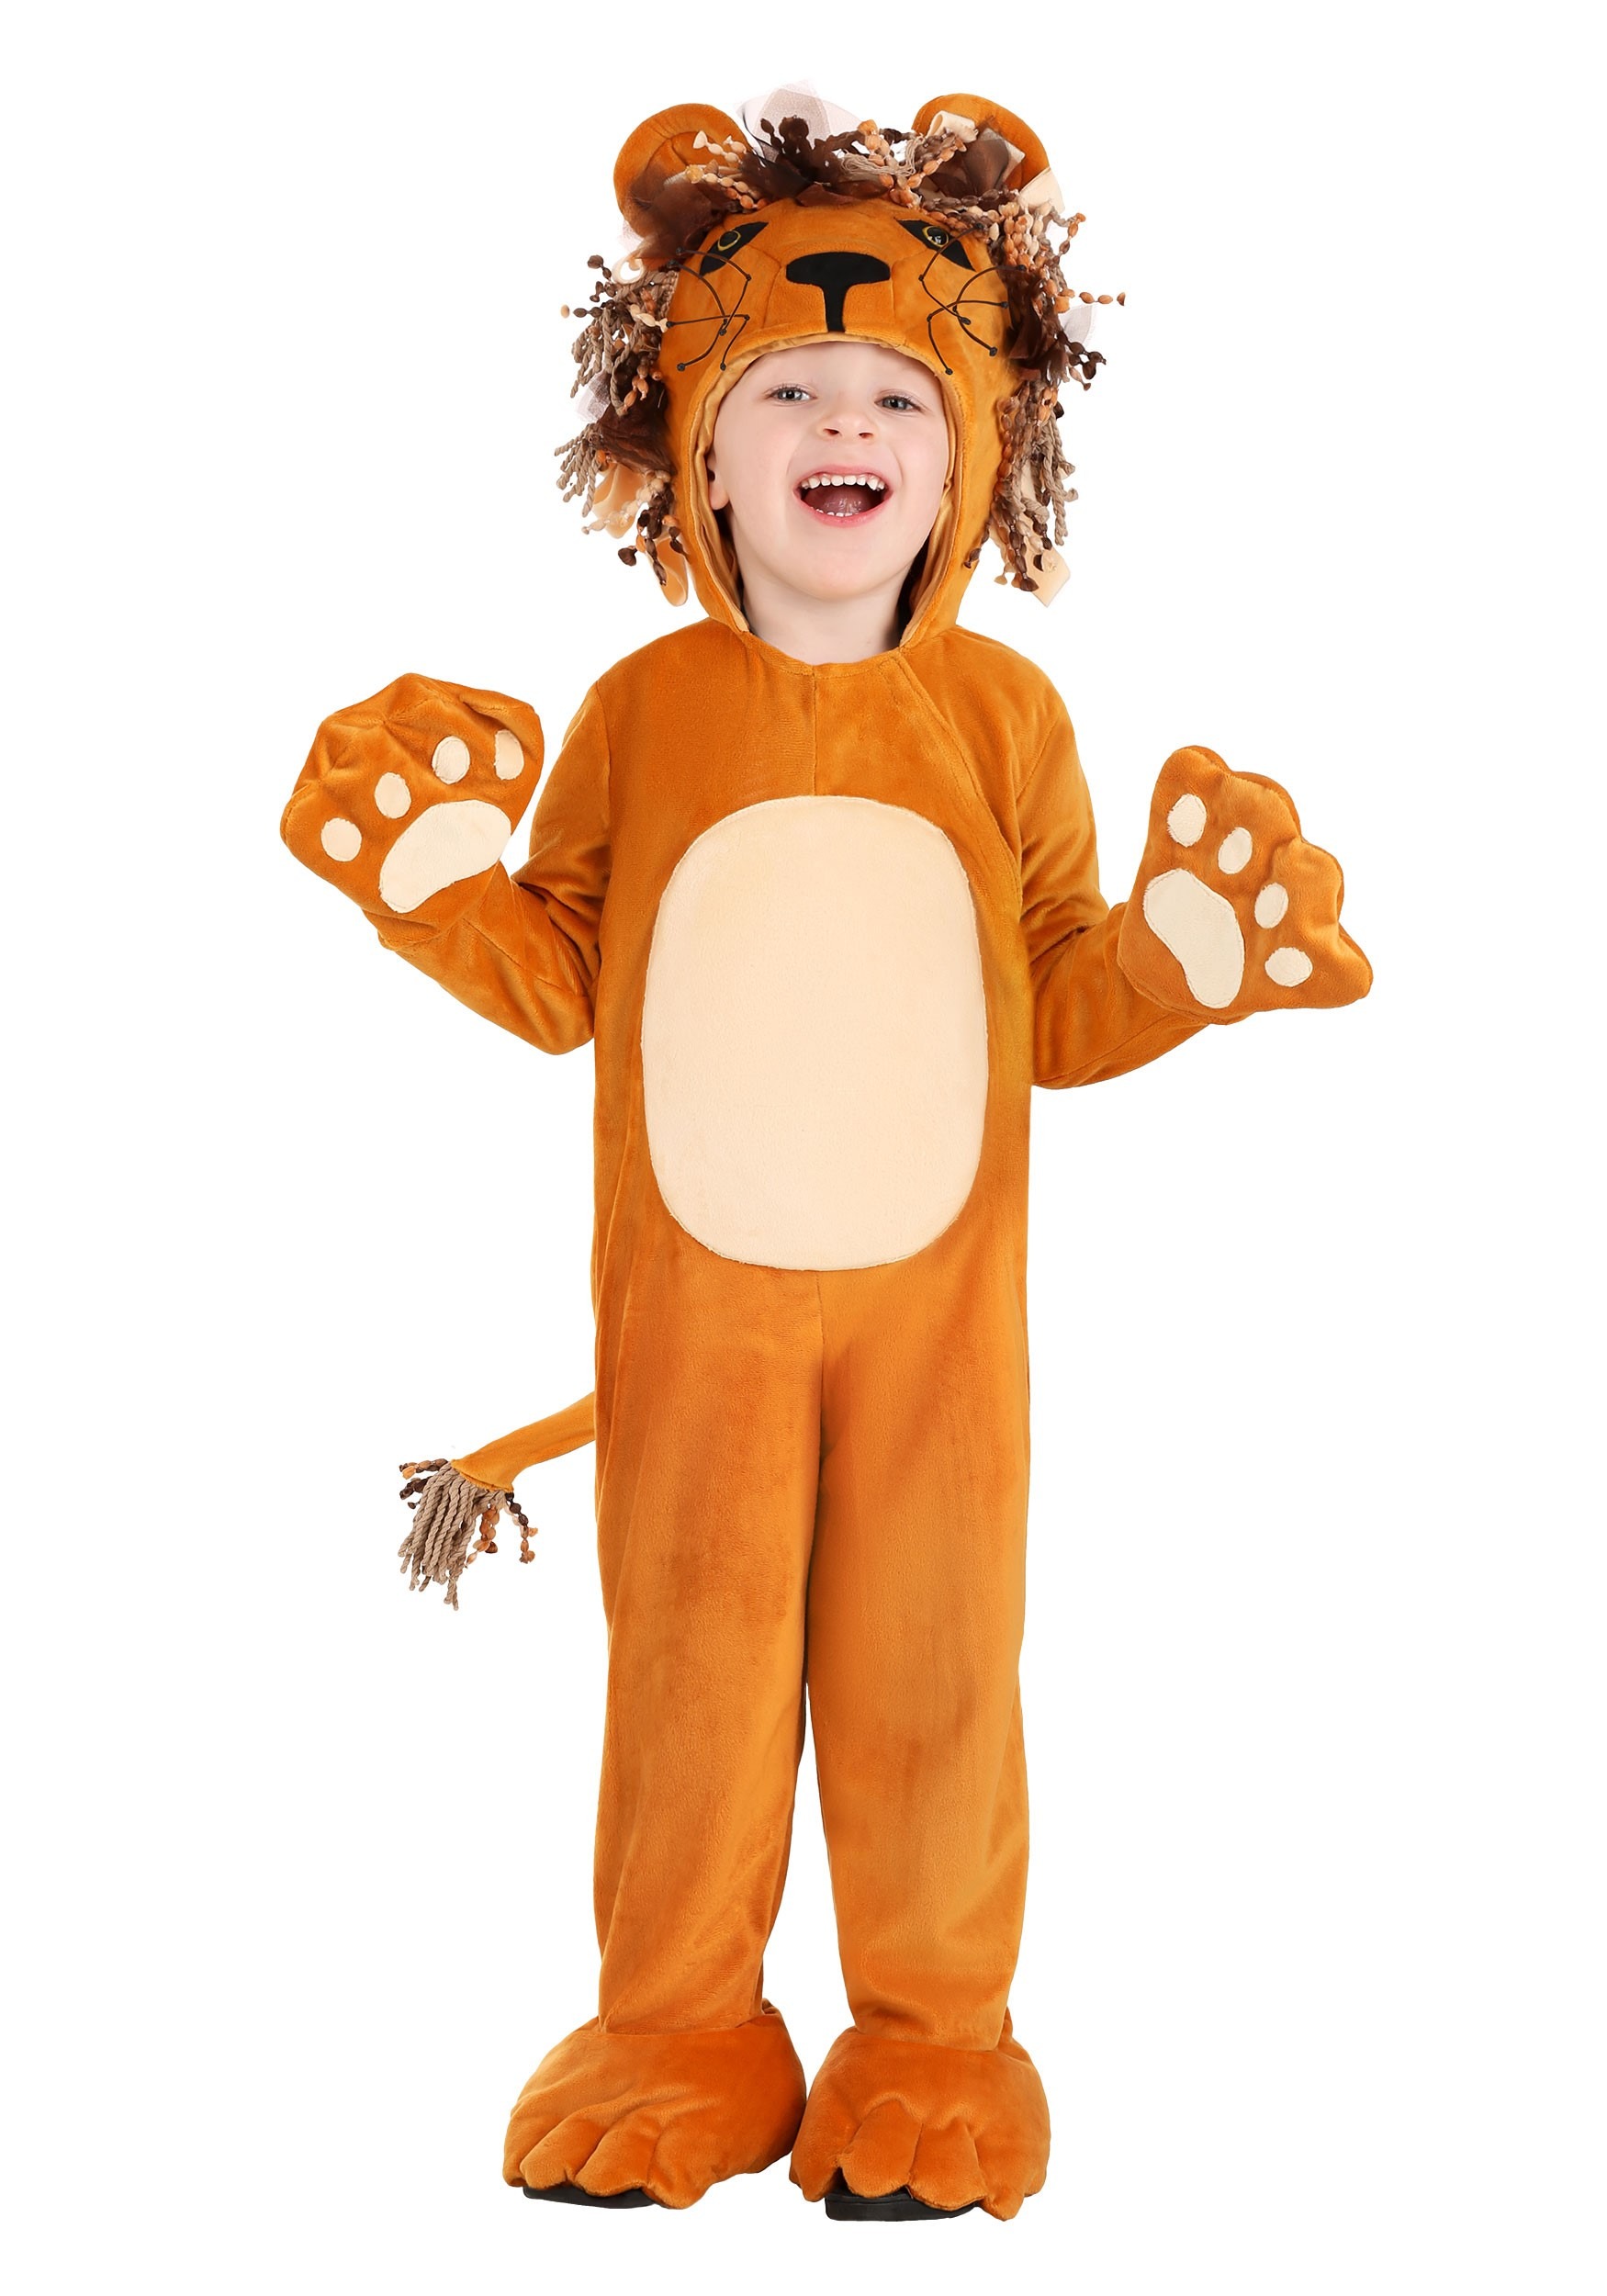 Roaring Lion - disfraz de niño pequeño Multicolor